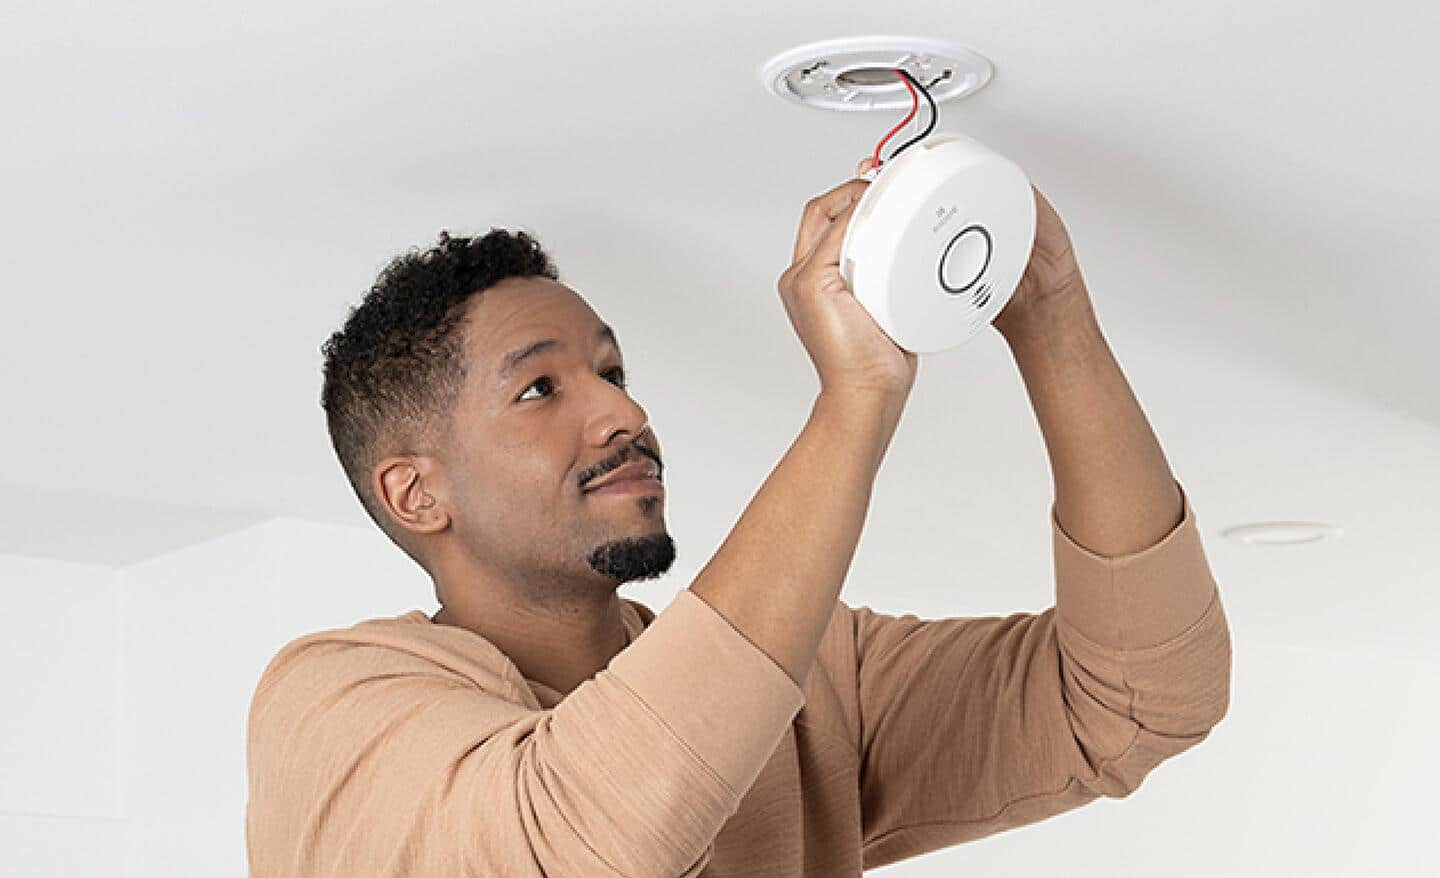 A man installing a carbon monoxide alarm.